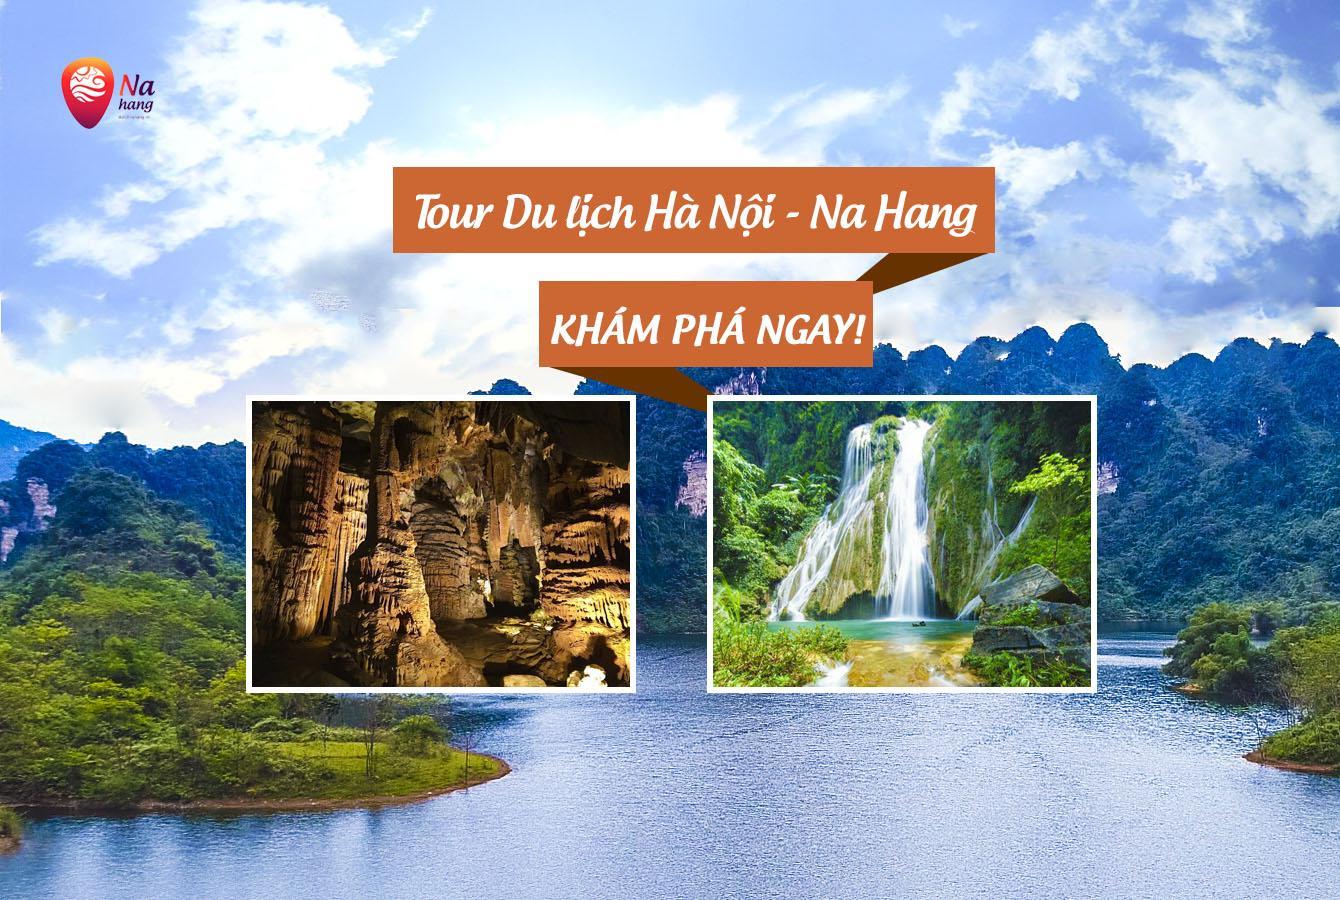 Banner du lịch Hà Nội